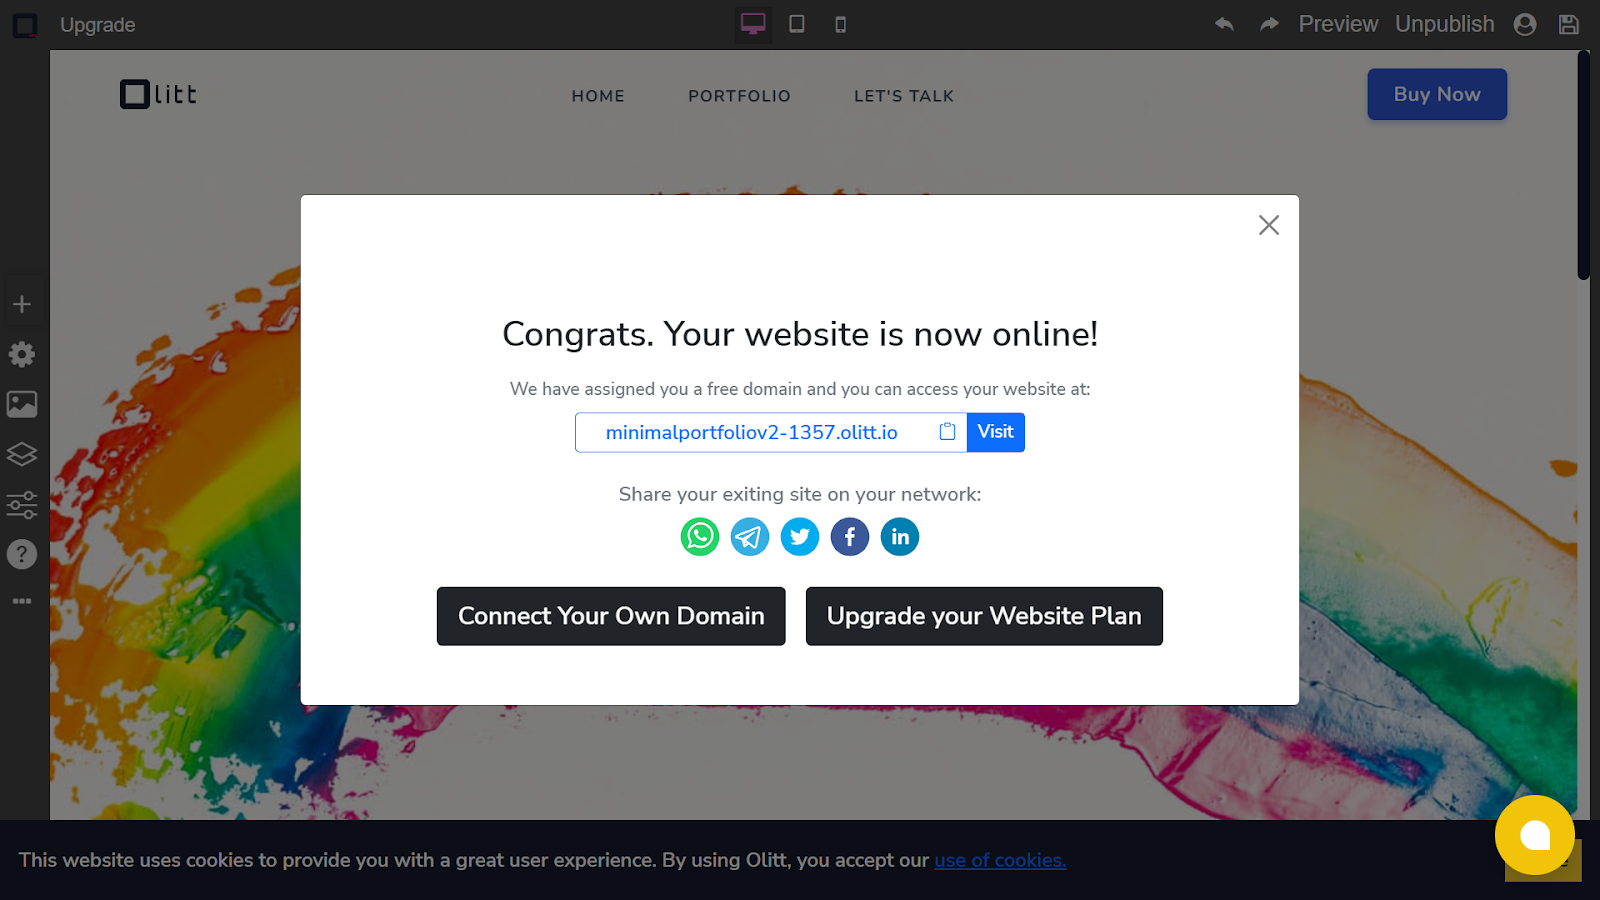 olitt website custom domain